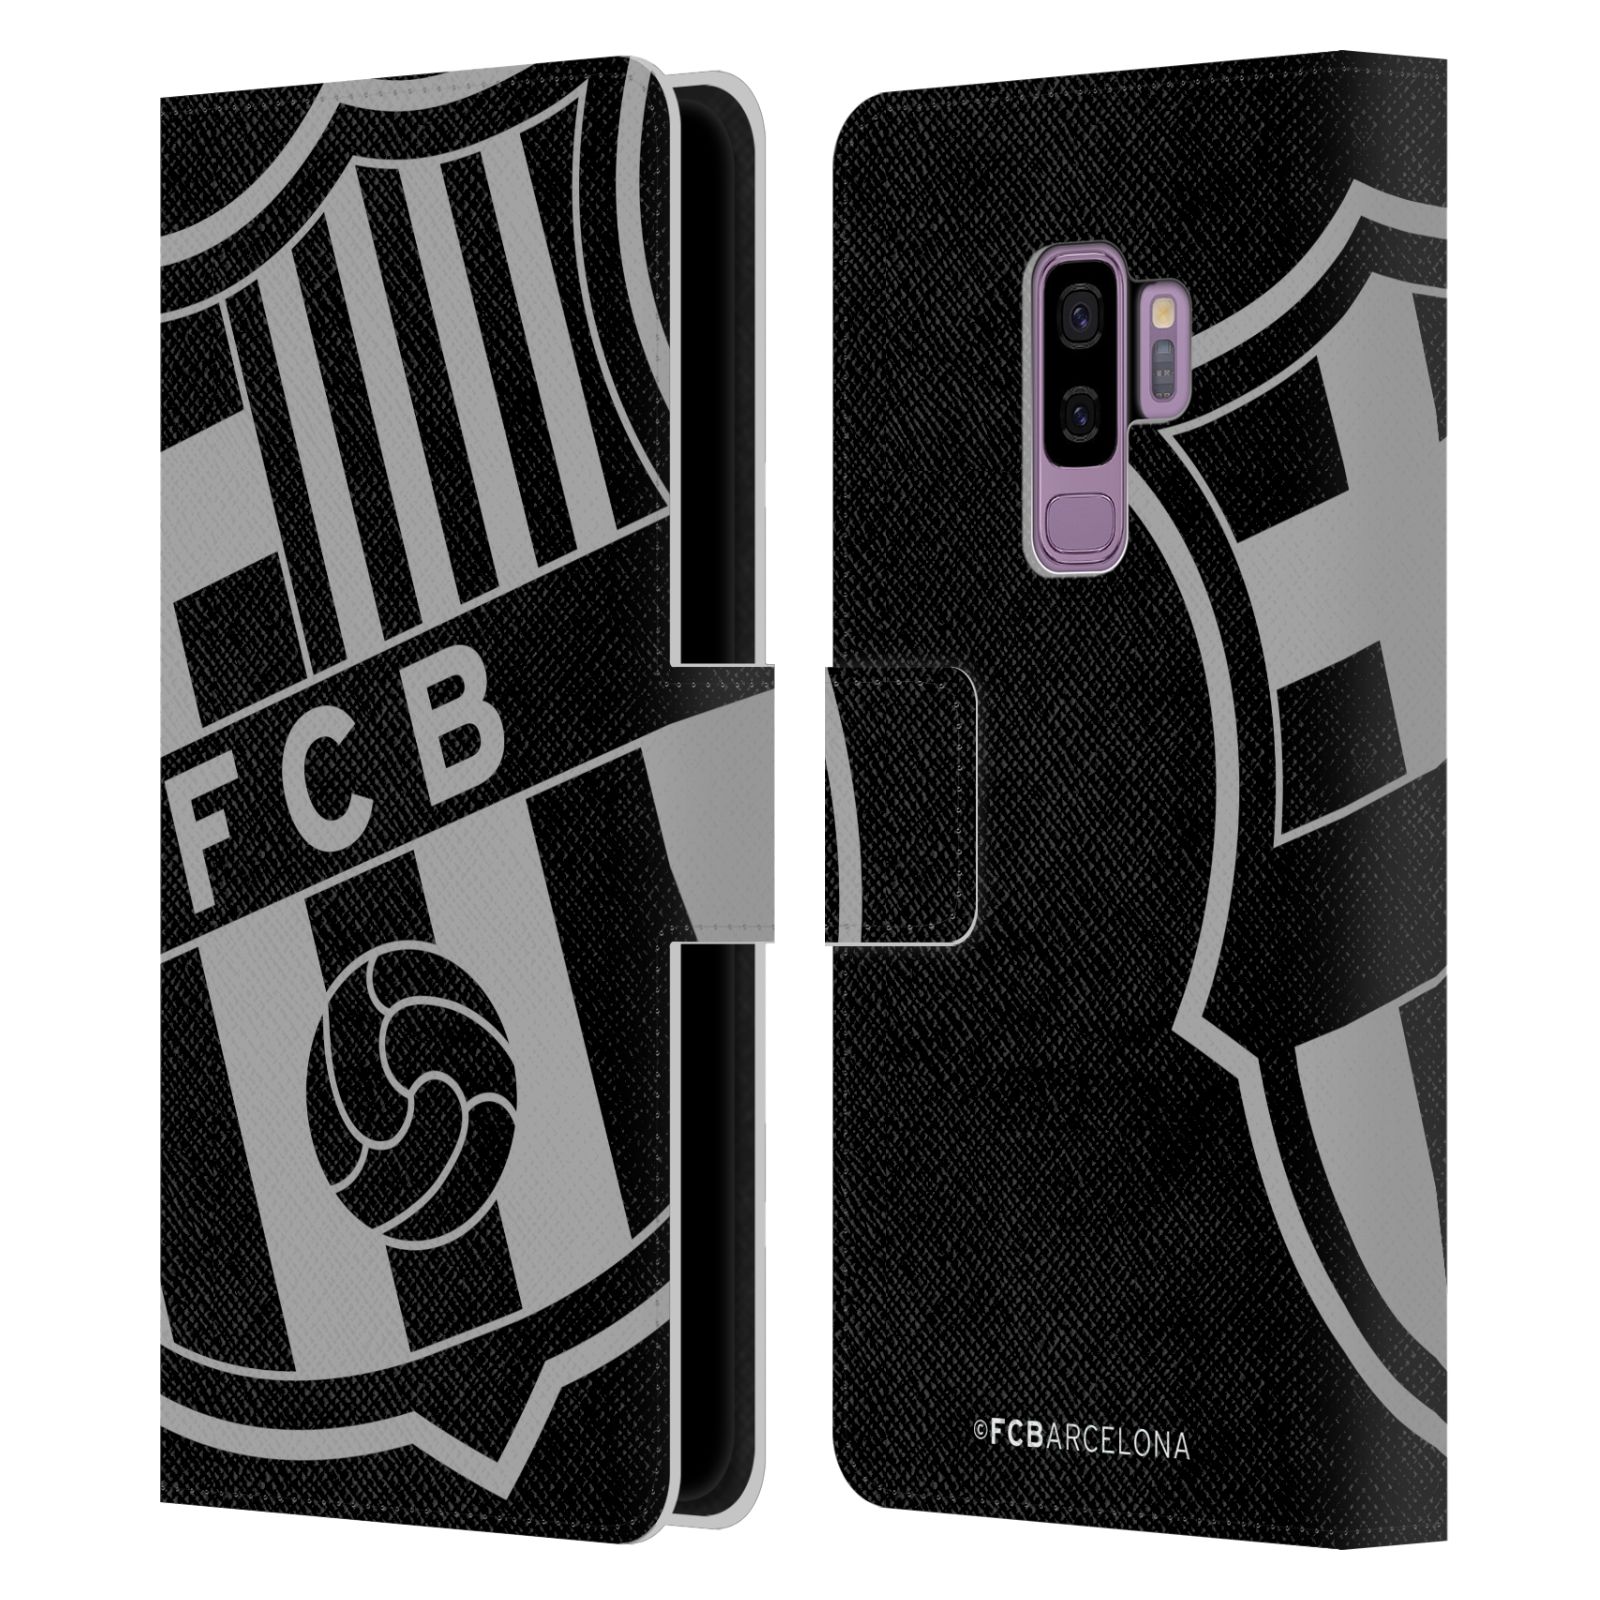 Pouzdro na mobil Samsung Galaxy S9+ / S9 PLUS - HEAD CASE - FC Barcelona - černošedé logo